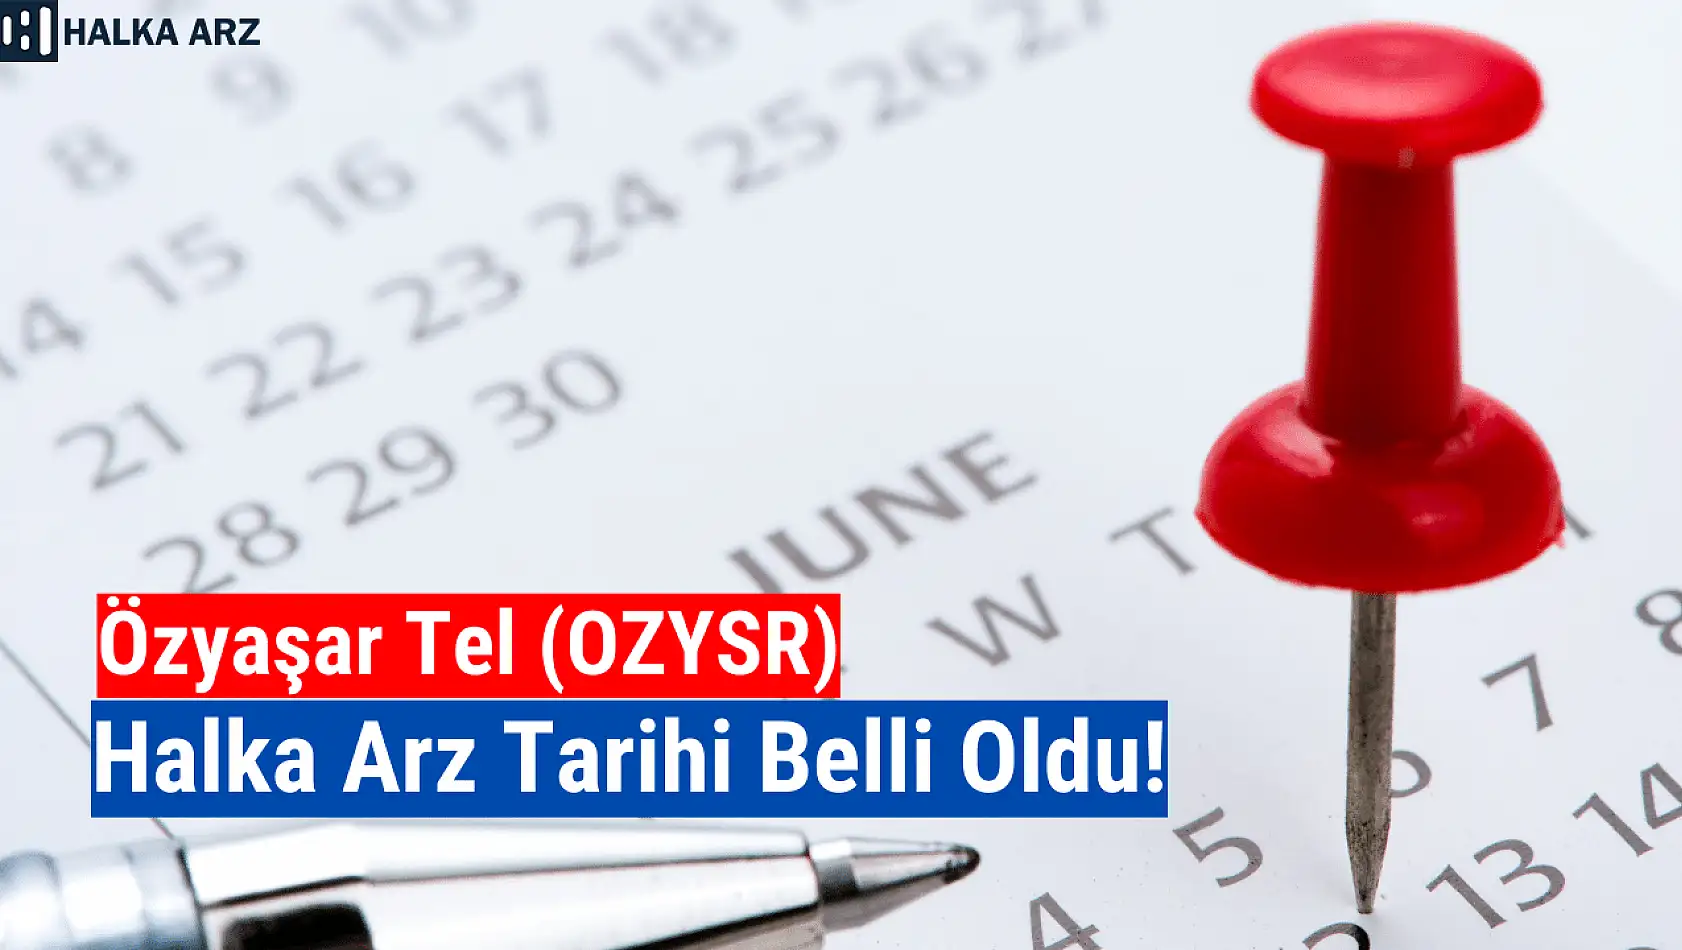 Özyaşar Tel (OZYSR) halka arz tarihi açıklandı!